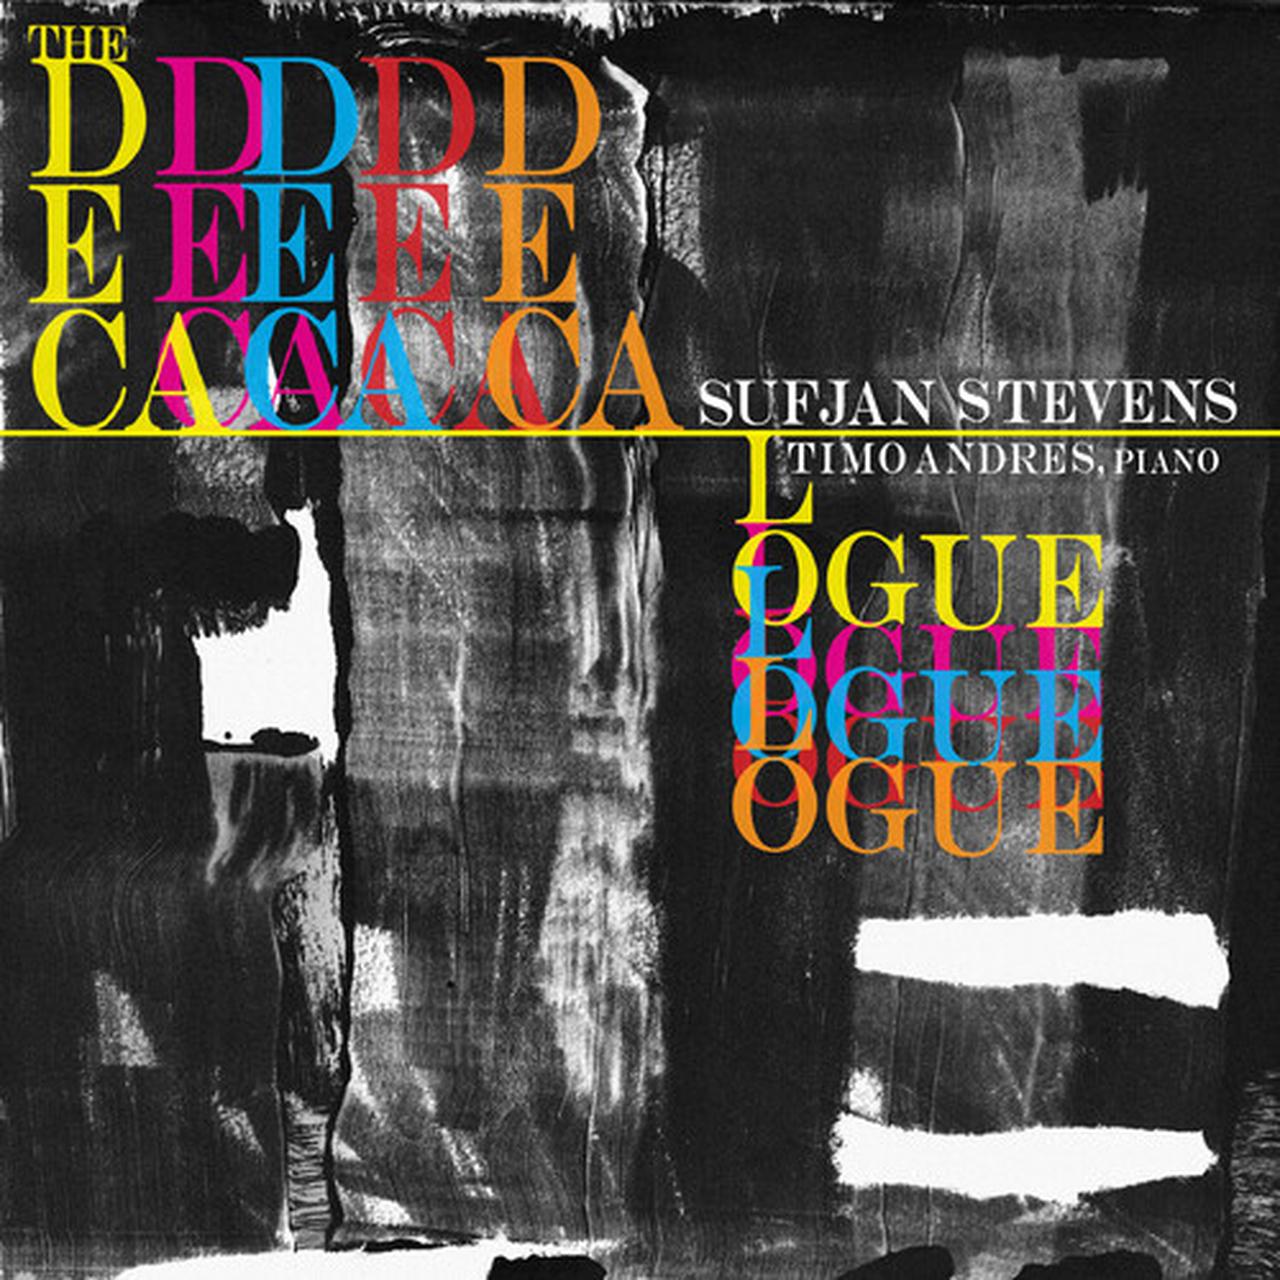 SUFIAN STEVENS - The Decalouge